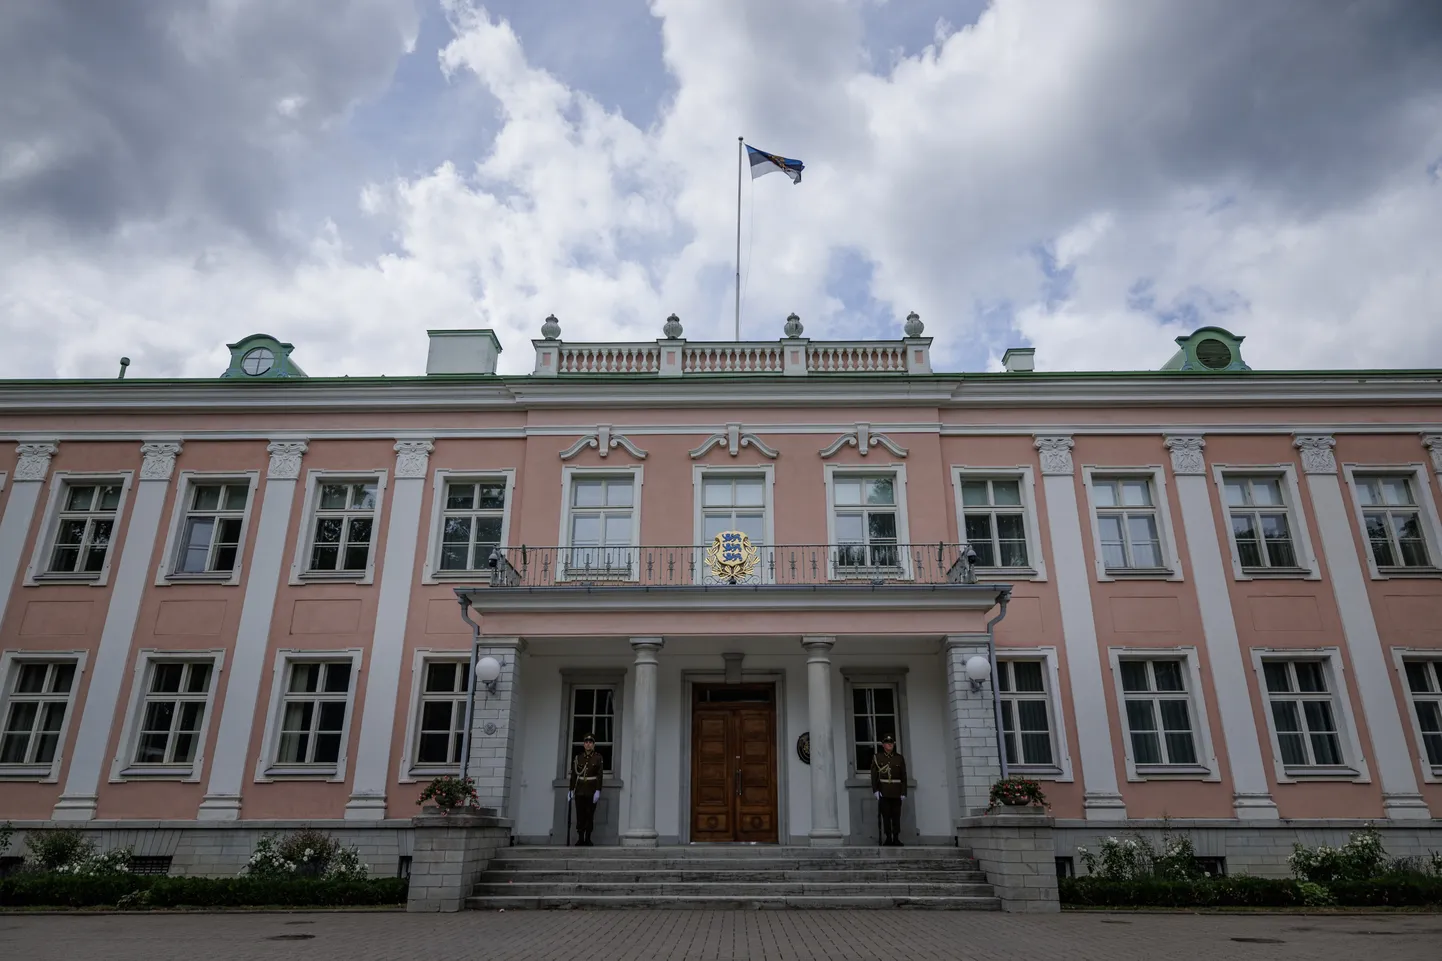 The office of the President in Kadriorg, Tallinn.